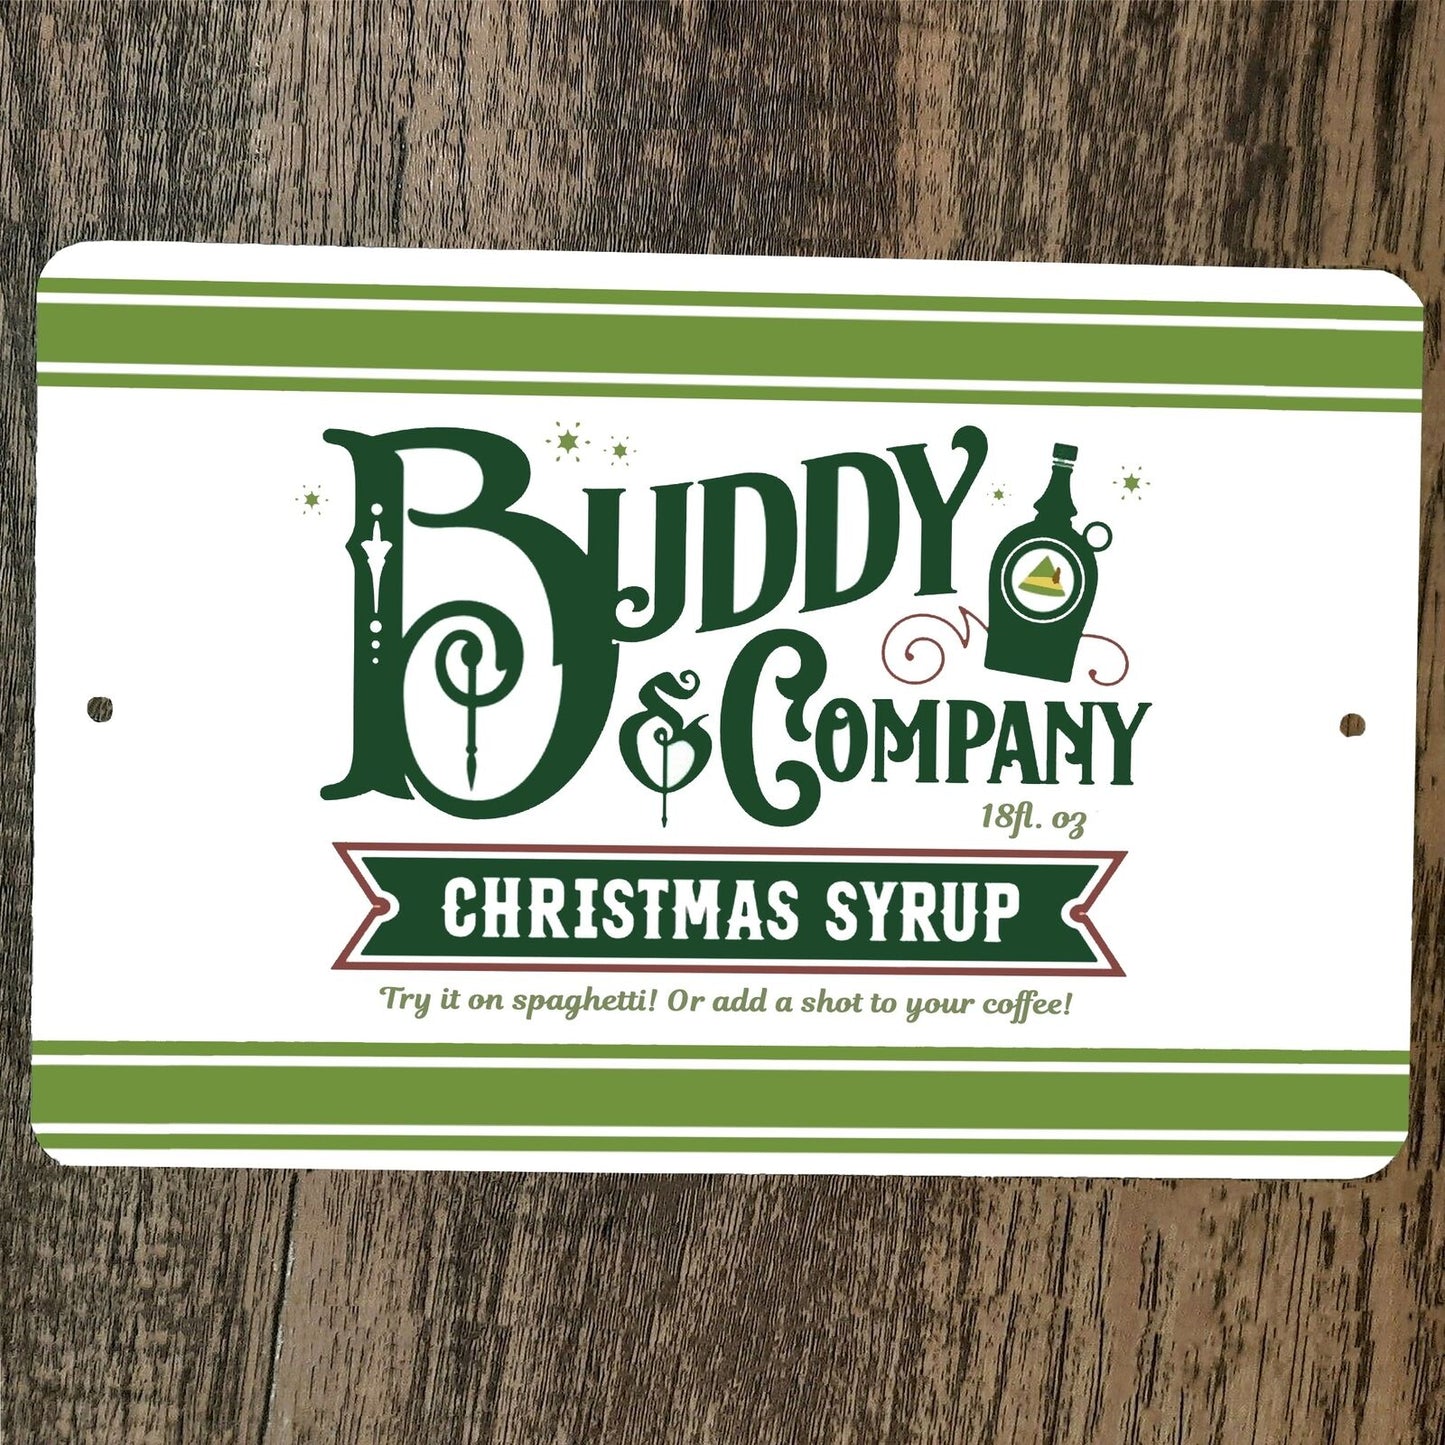 Buddy Company Christmas Syrup 8x12 Metal Wall Sign